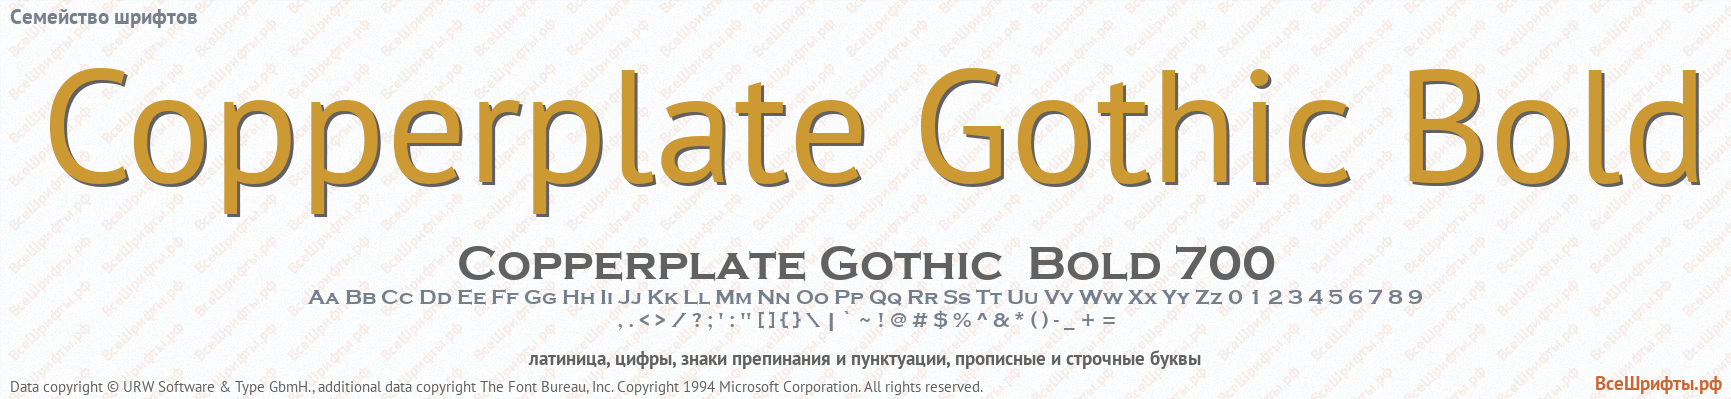 Семейство шрифтов Copperplate Gothic Bold